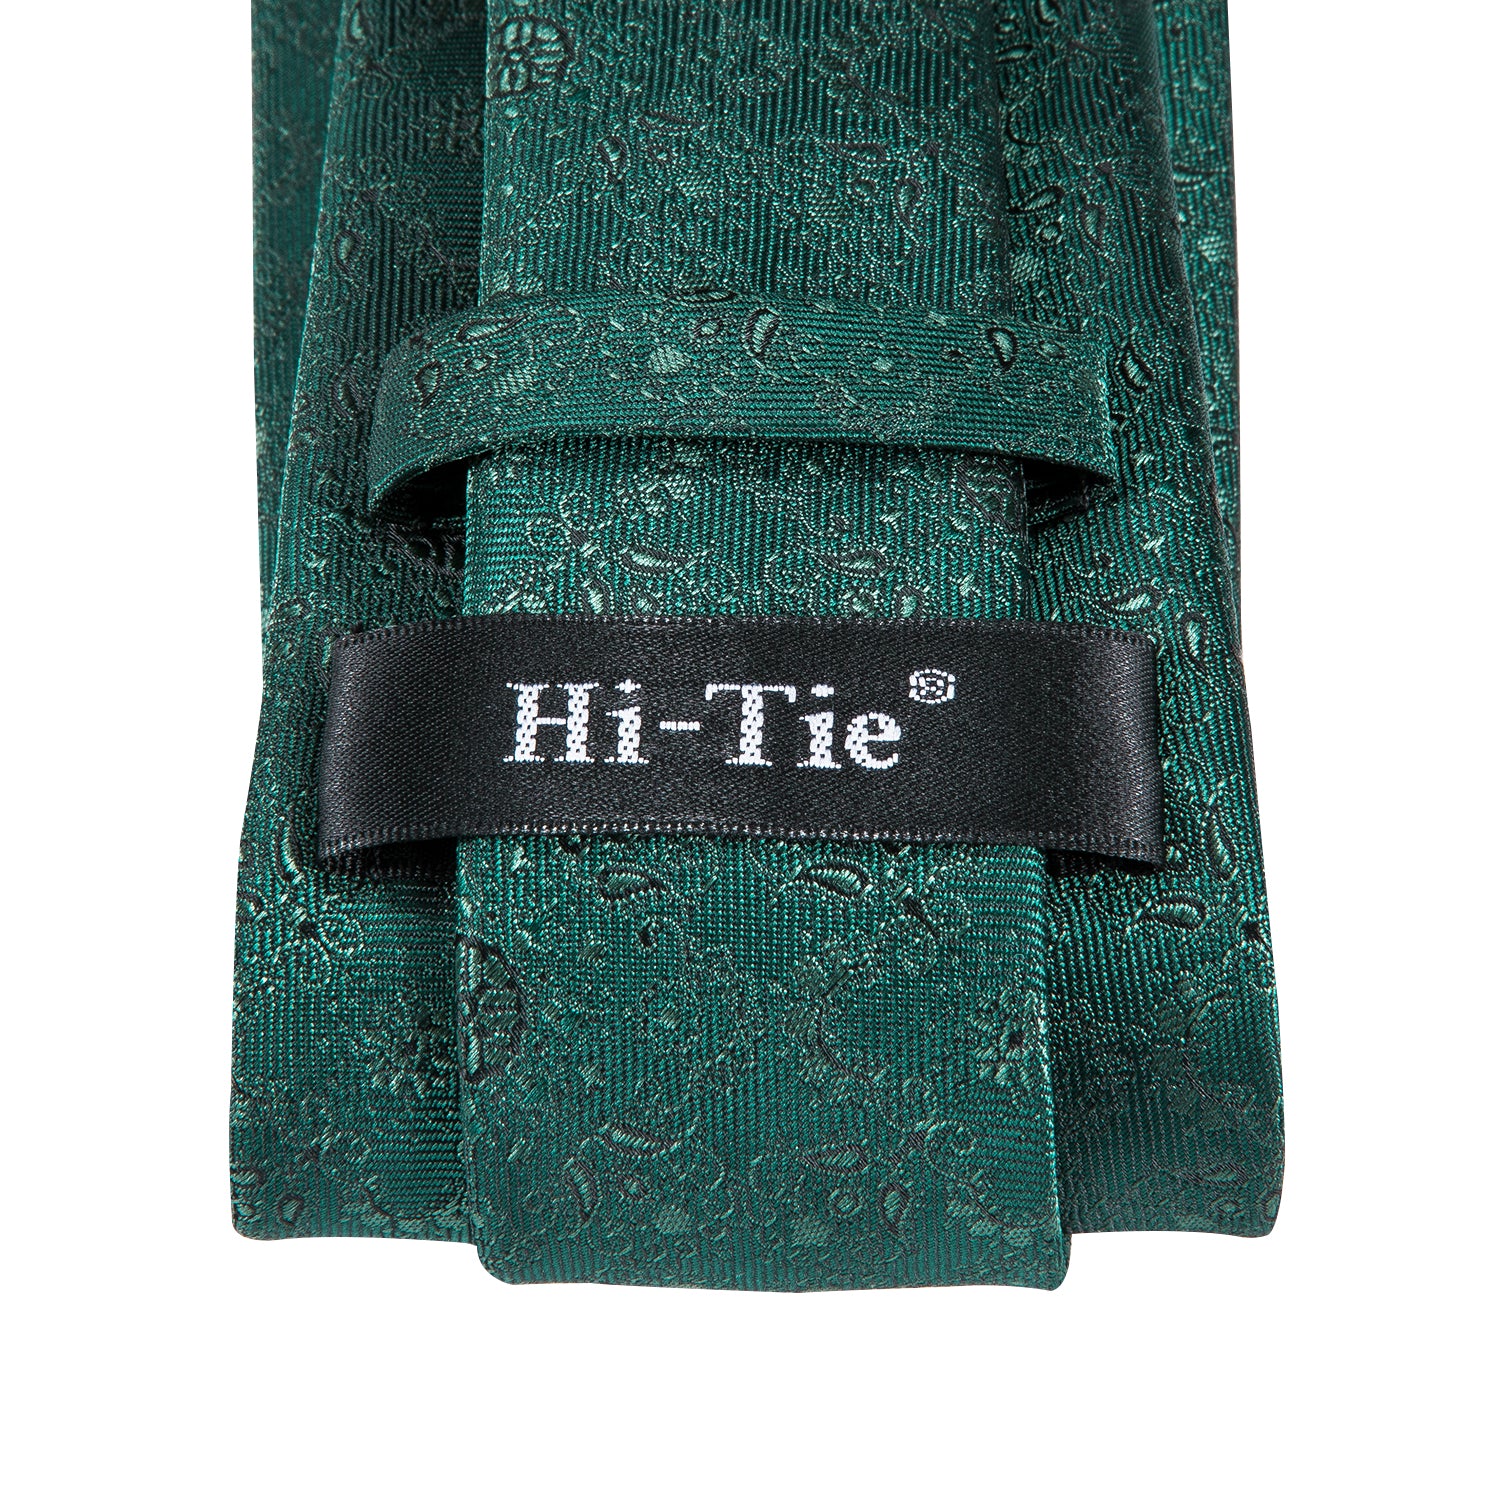 Hi-Tie Dark Green Floral Men's Wedding Tie Pocket Square Cufflinks Set